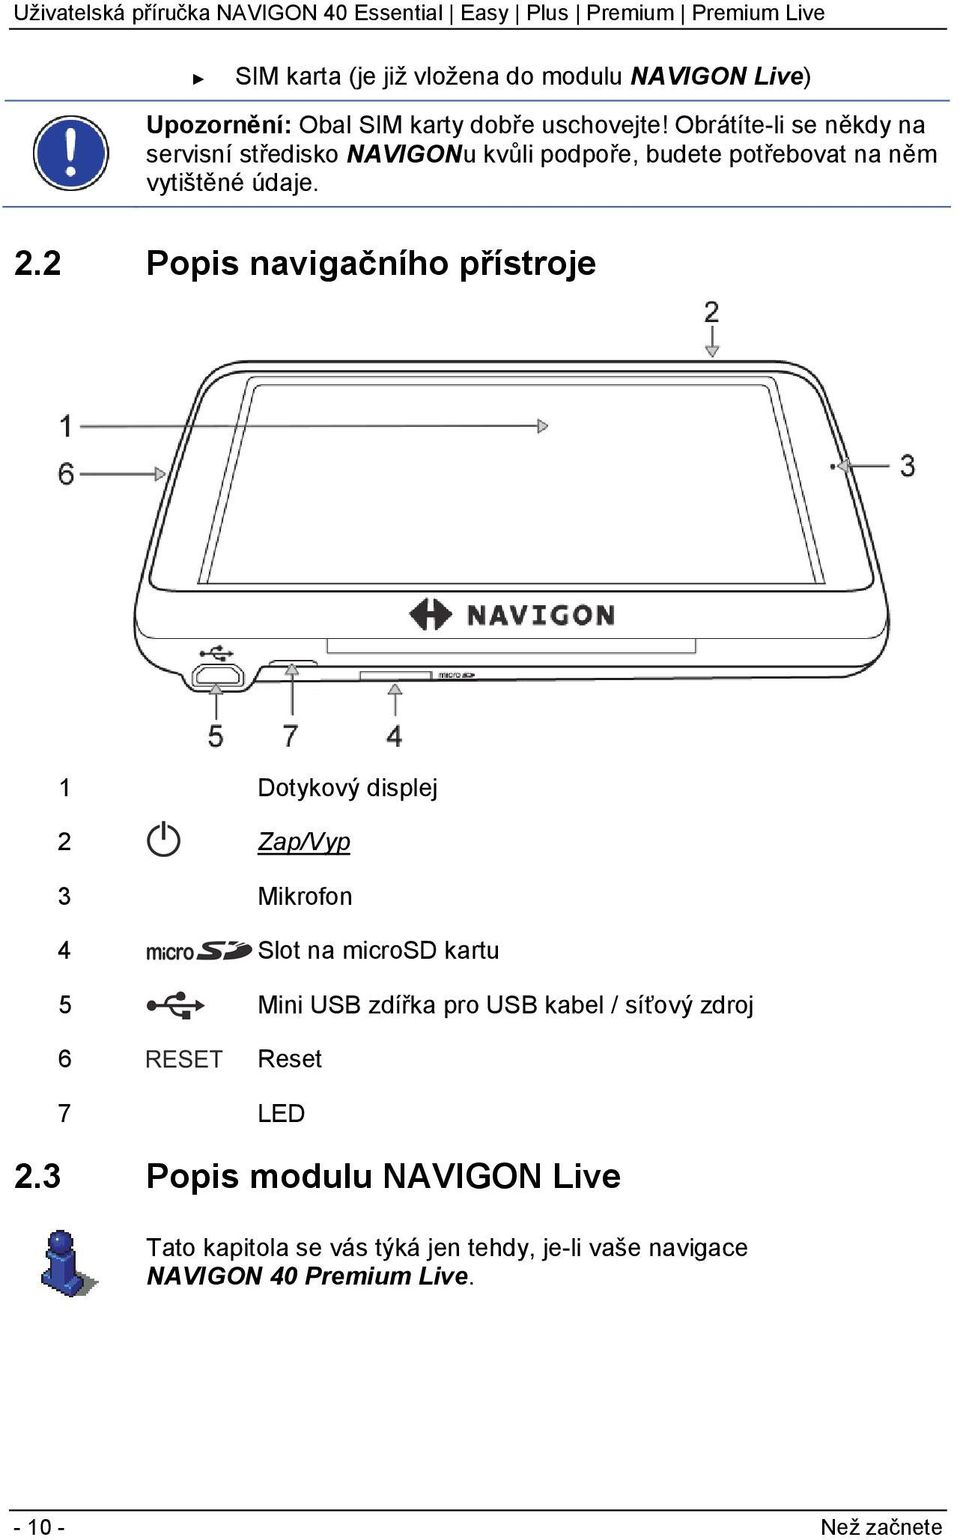 2 Popis navigačního přístroje 1 Dotykový displej 2 Zap/Vyp 3 Mikrofon 4 Slot na microsd kartu 5 Mini USB zdířka pro USB